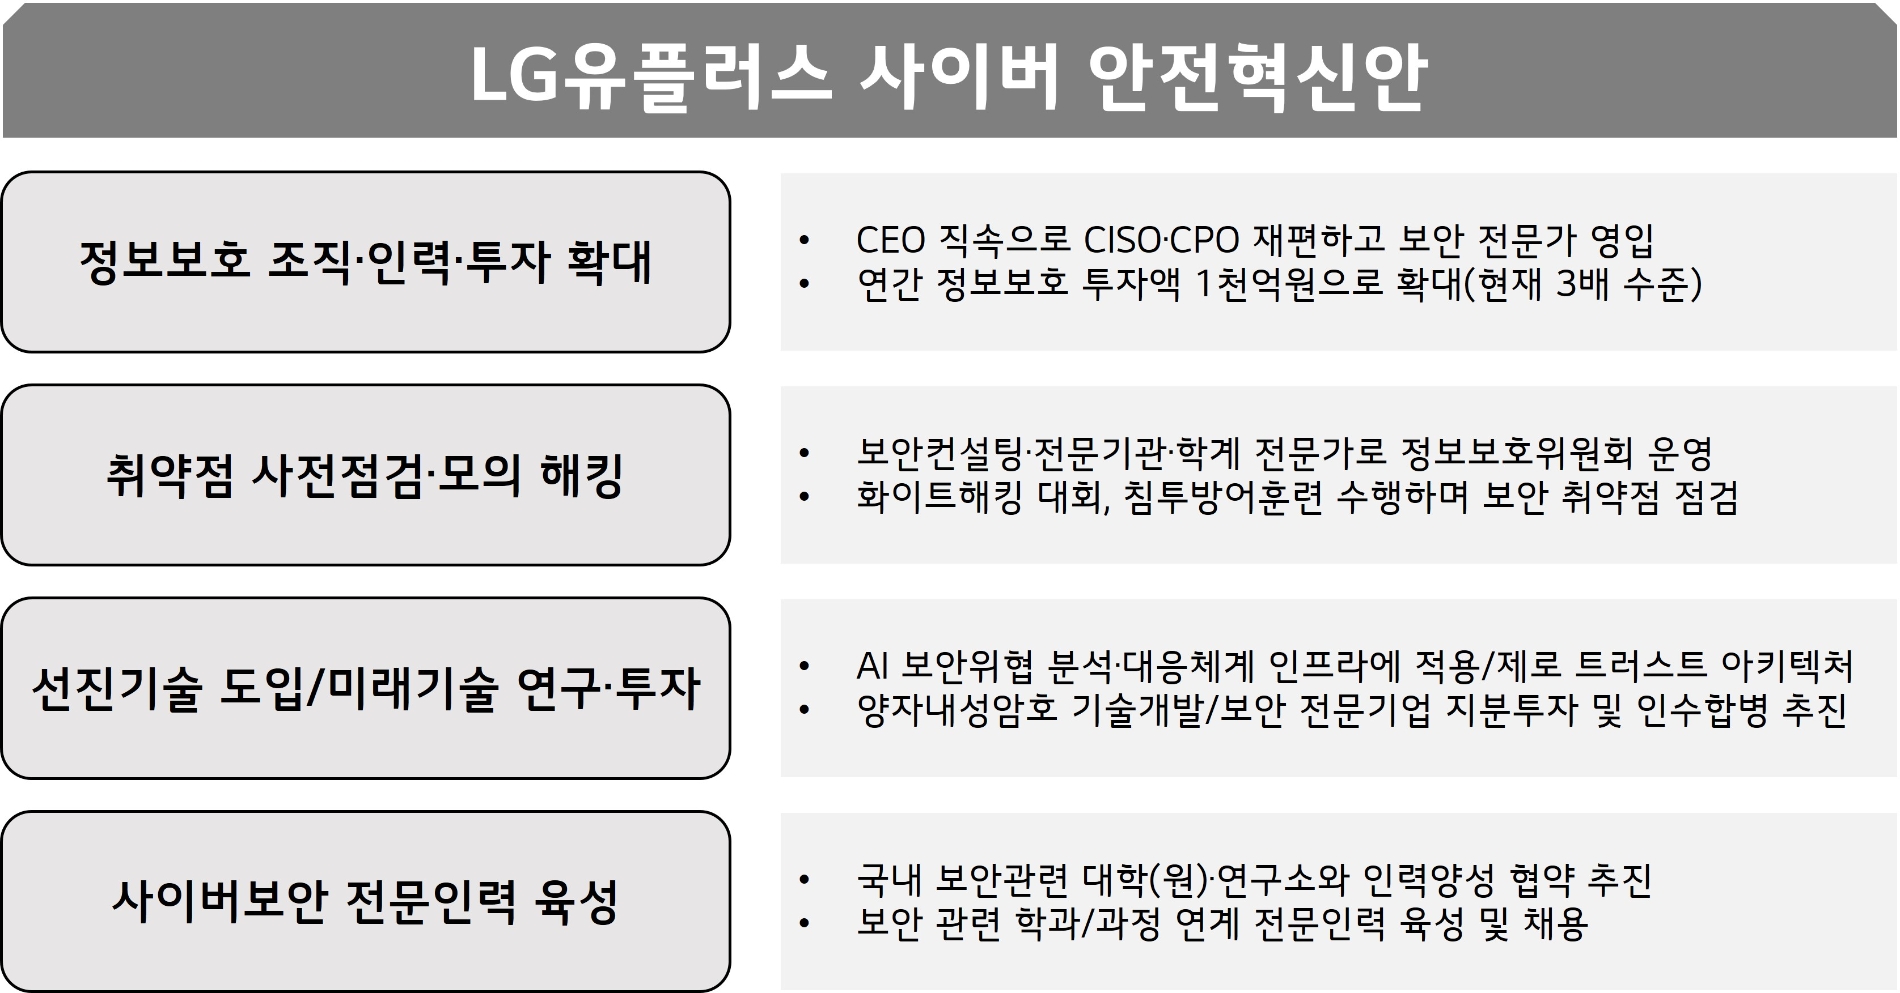 LG유플러스가 발표한 사이버 안전혁신안. 지료=LG유플러스